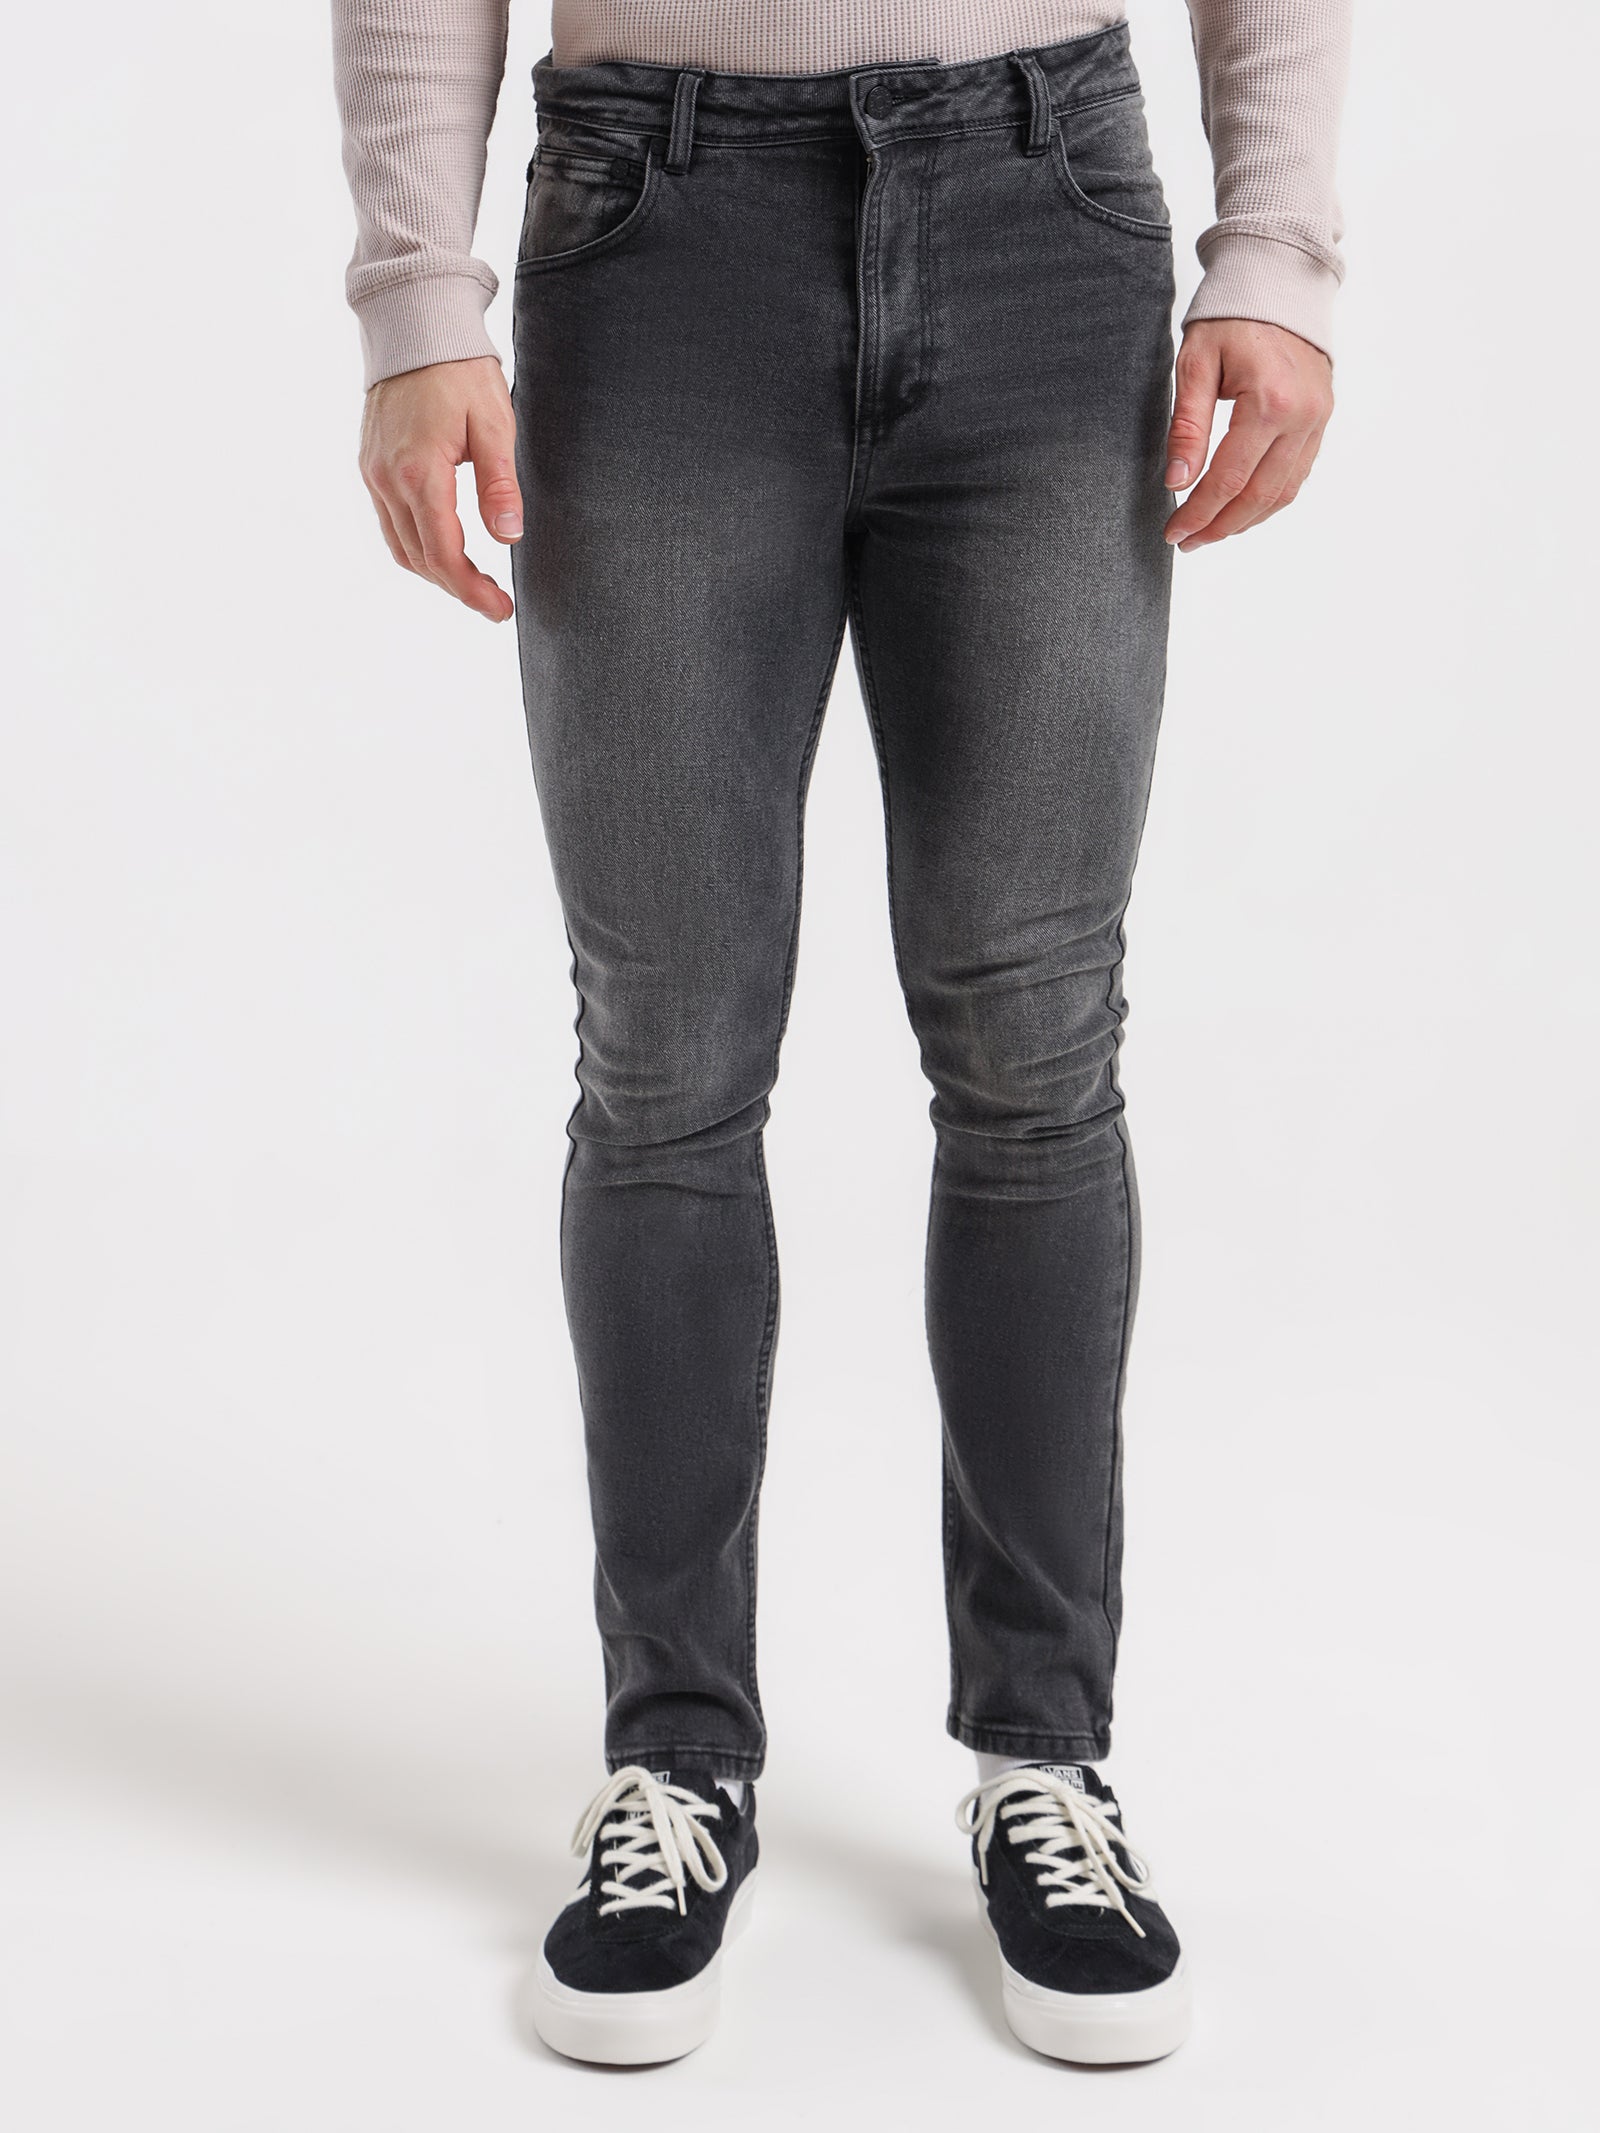 Zane Skinny Denim Jeans in Washed Black